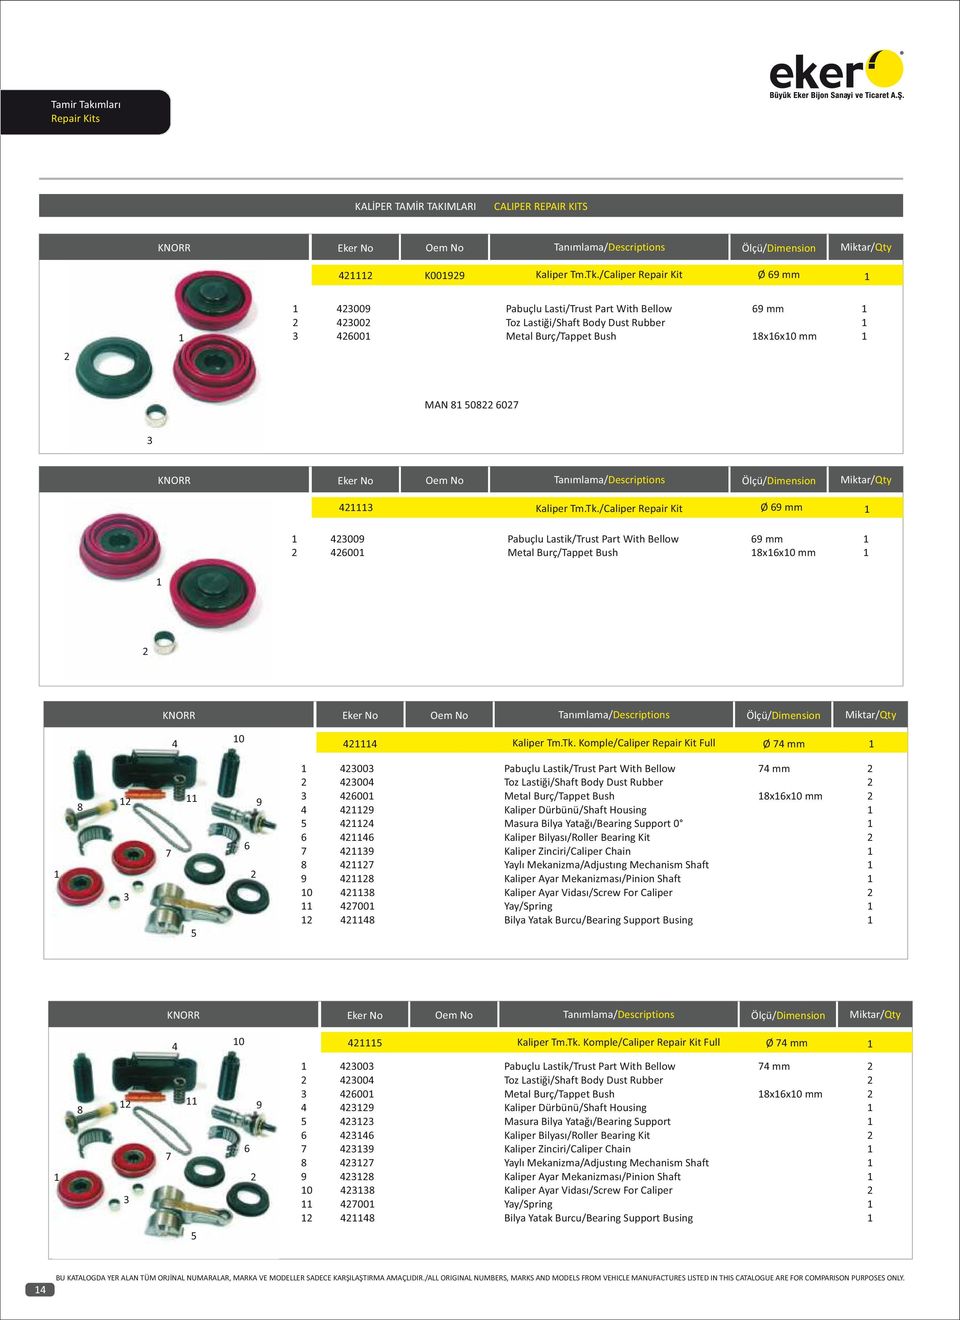 Masura Bilya Yatağı/Bearing Support 0 Kaliper Bilyası/Roller Bearing Kit 7 9 Kaliper Zinciri/Caliper Chain 8 7 Yaylı Mekanizma/Adjustıng Mechanism Shaft 9 8 Kaliper Ayar Mekanizması/Pinion Shaft 0 8